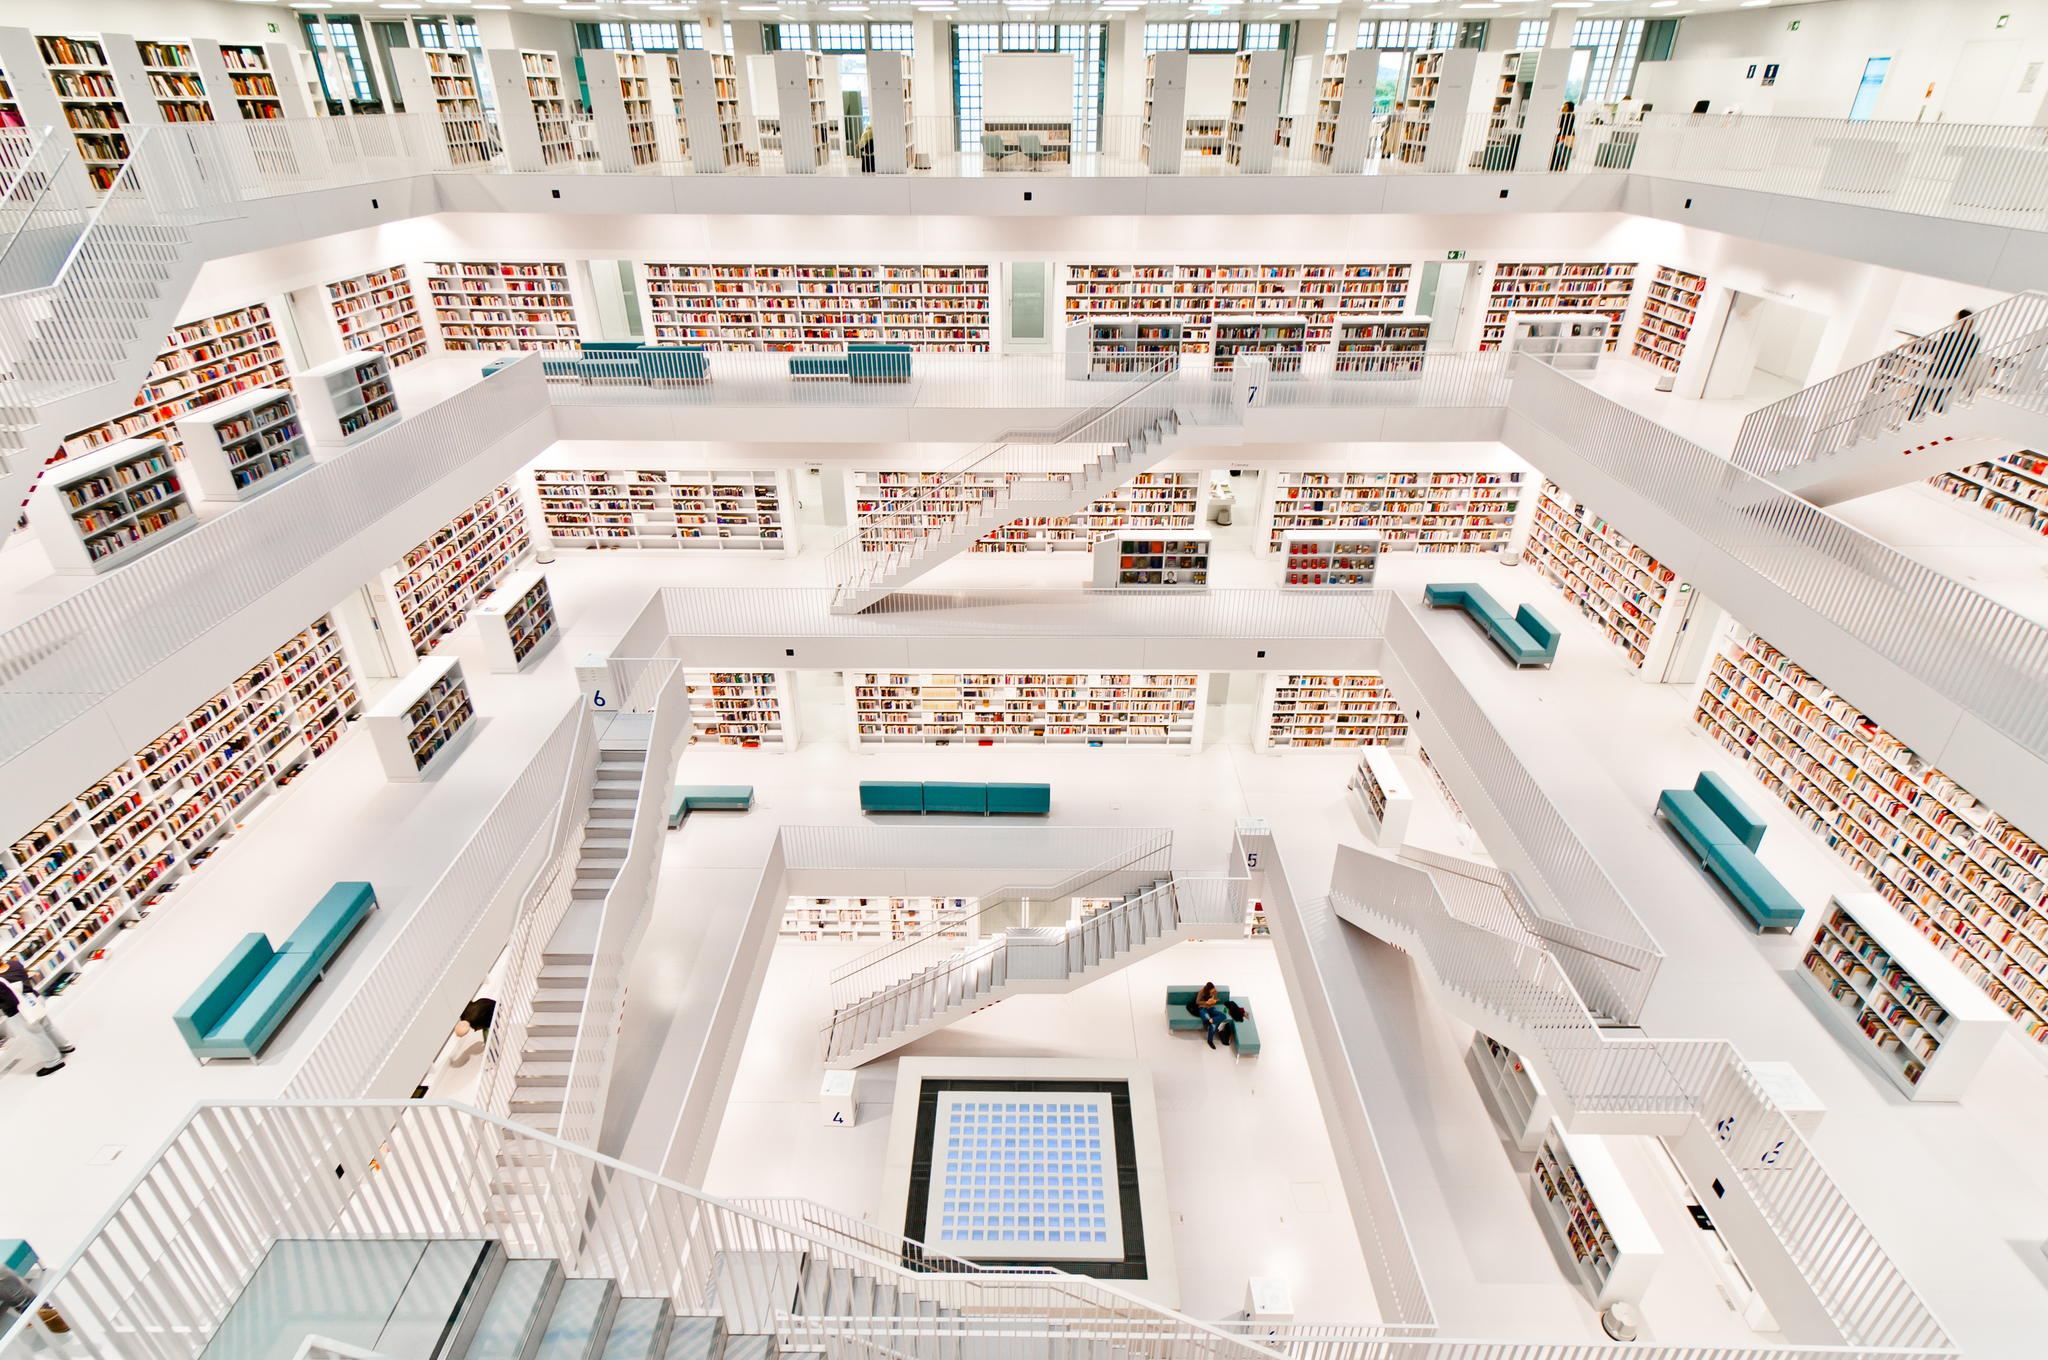 La bibliothèque municipale de Stuttgart